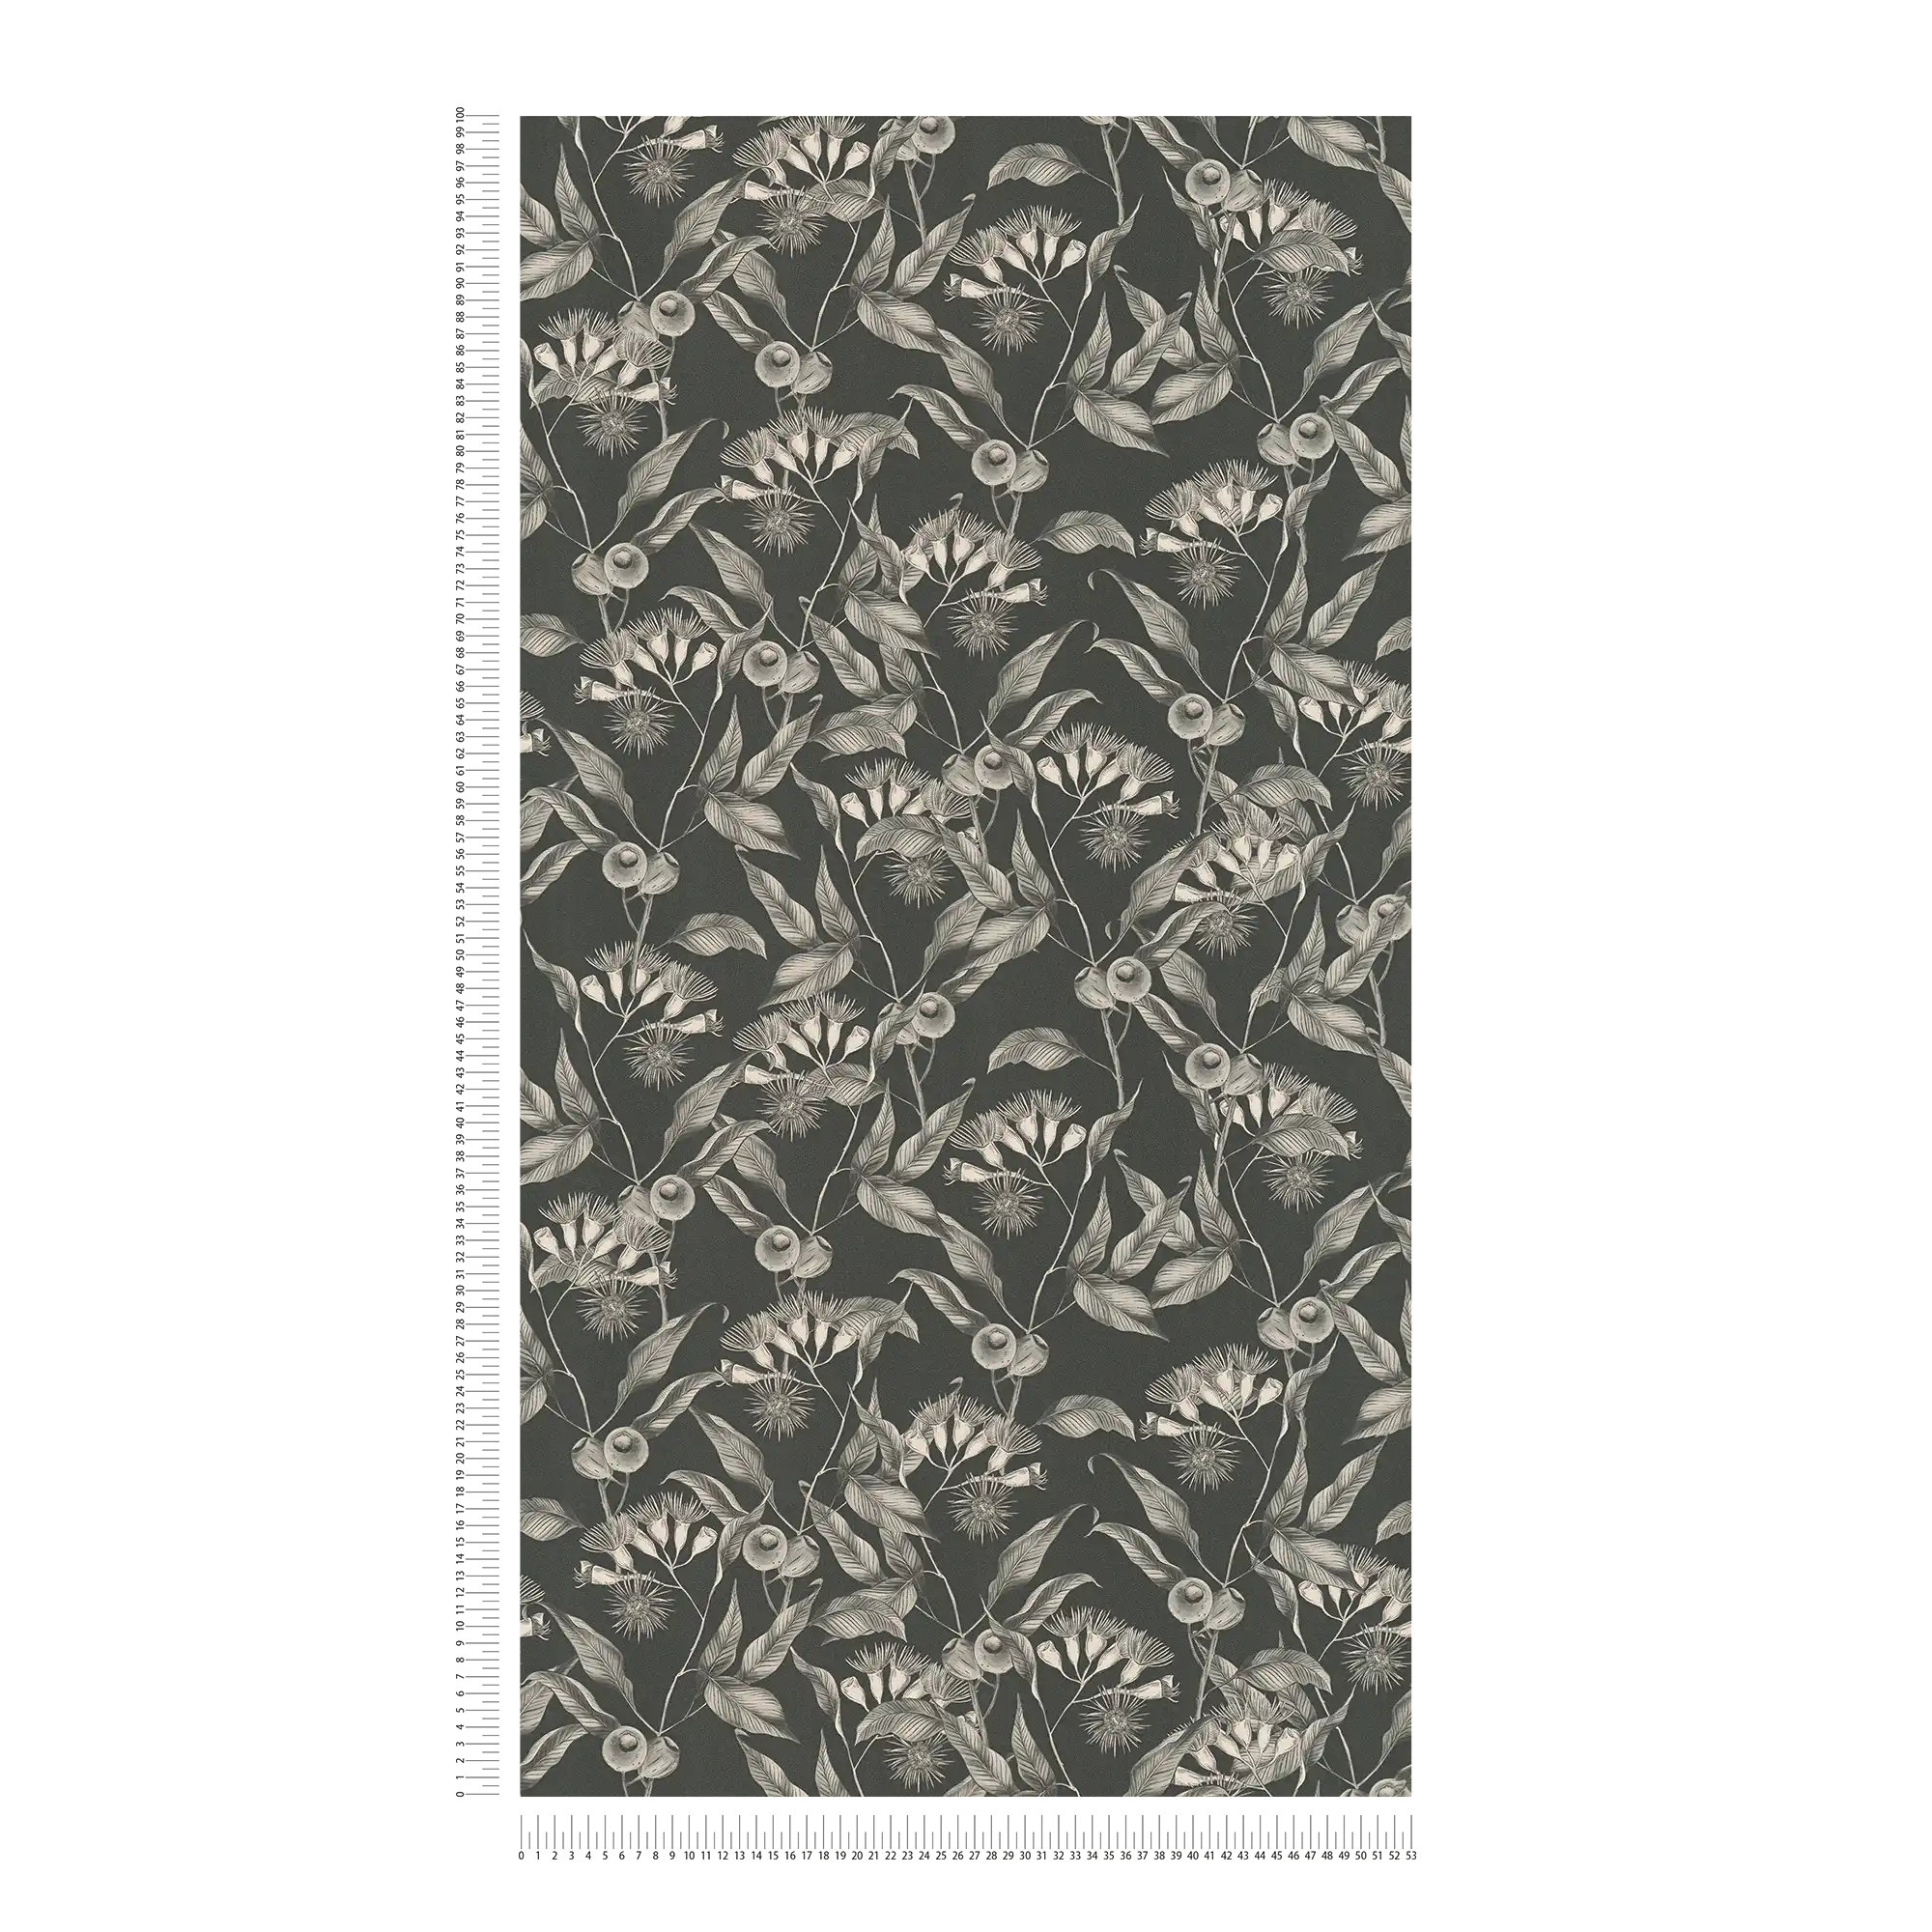             Moderne Tapete floral mit Blättern & Blüten strukturiert matt – Schwarz, Weiß, Grau
        